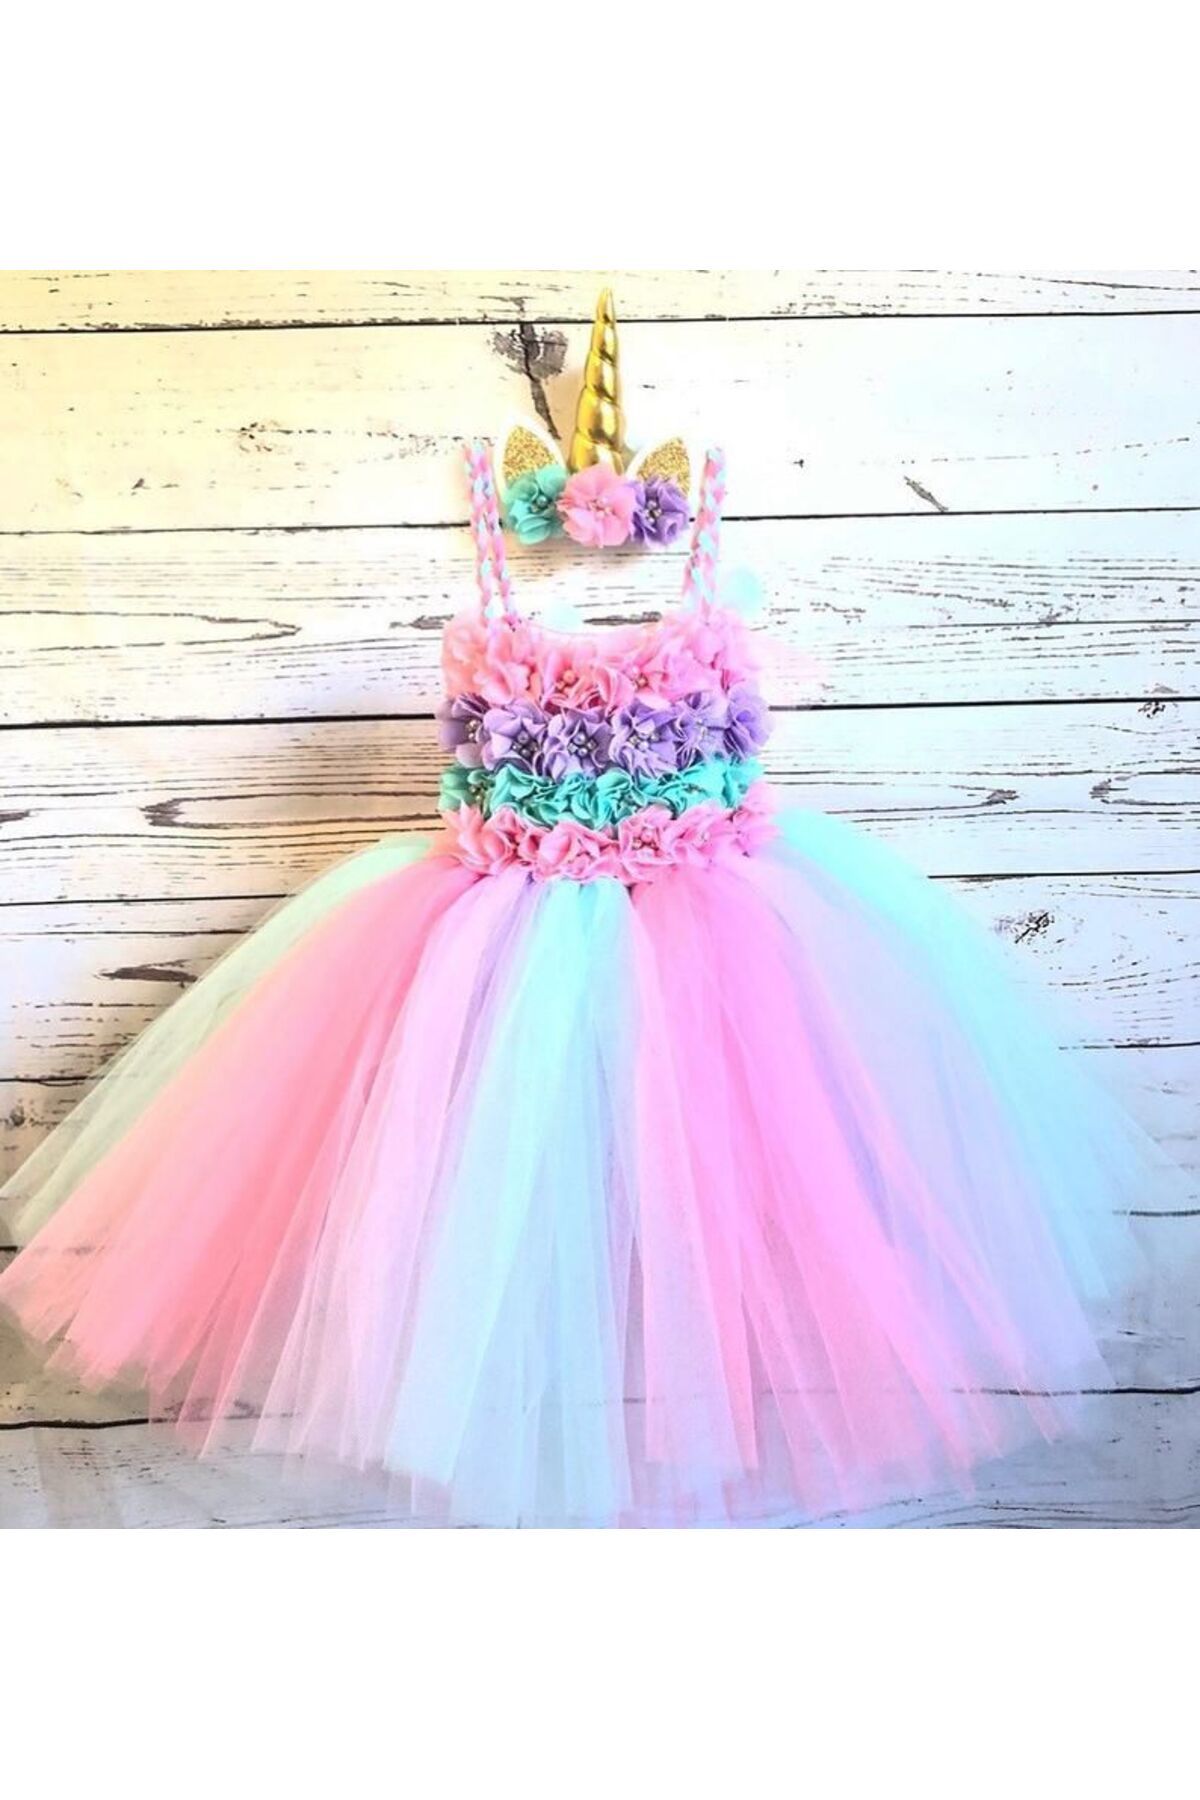 Yoyko Çiçekli Prenses Unicorn Tütü Elbise + Unicorn Taç -Doğum Günü Elbisesi, kız prenses kostümü elbise